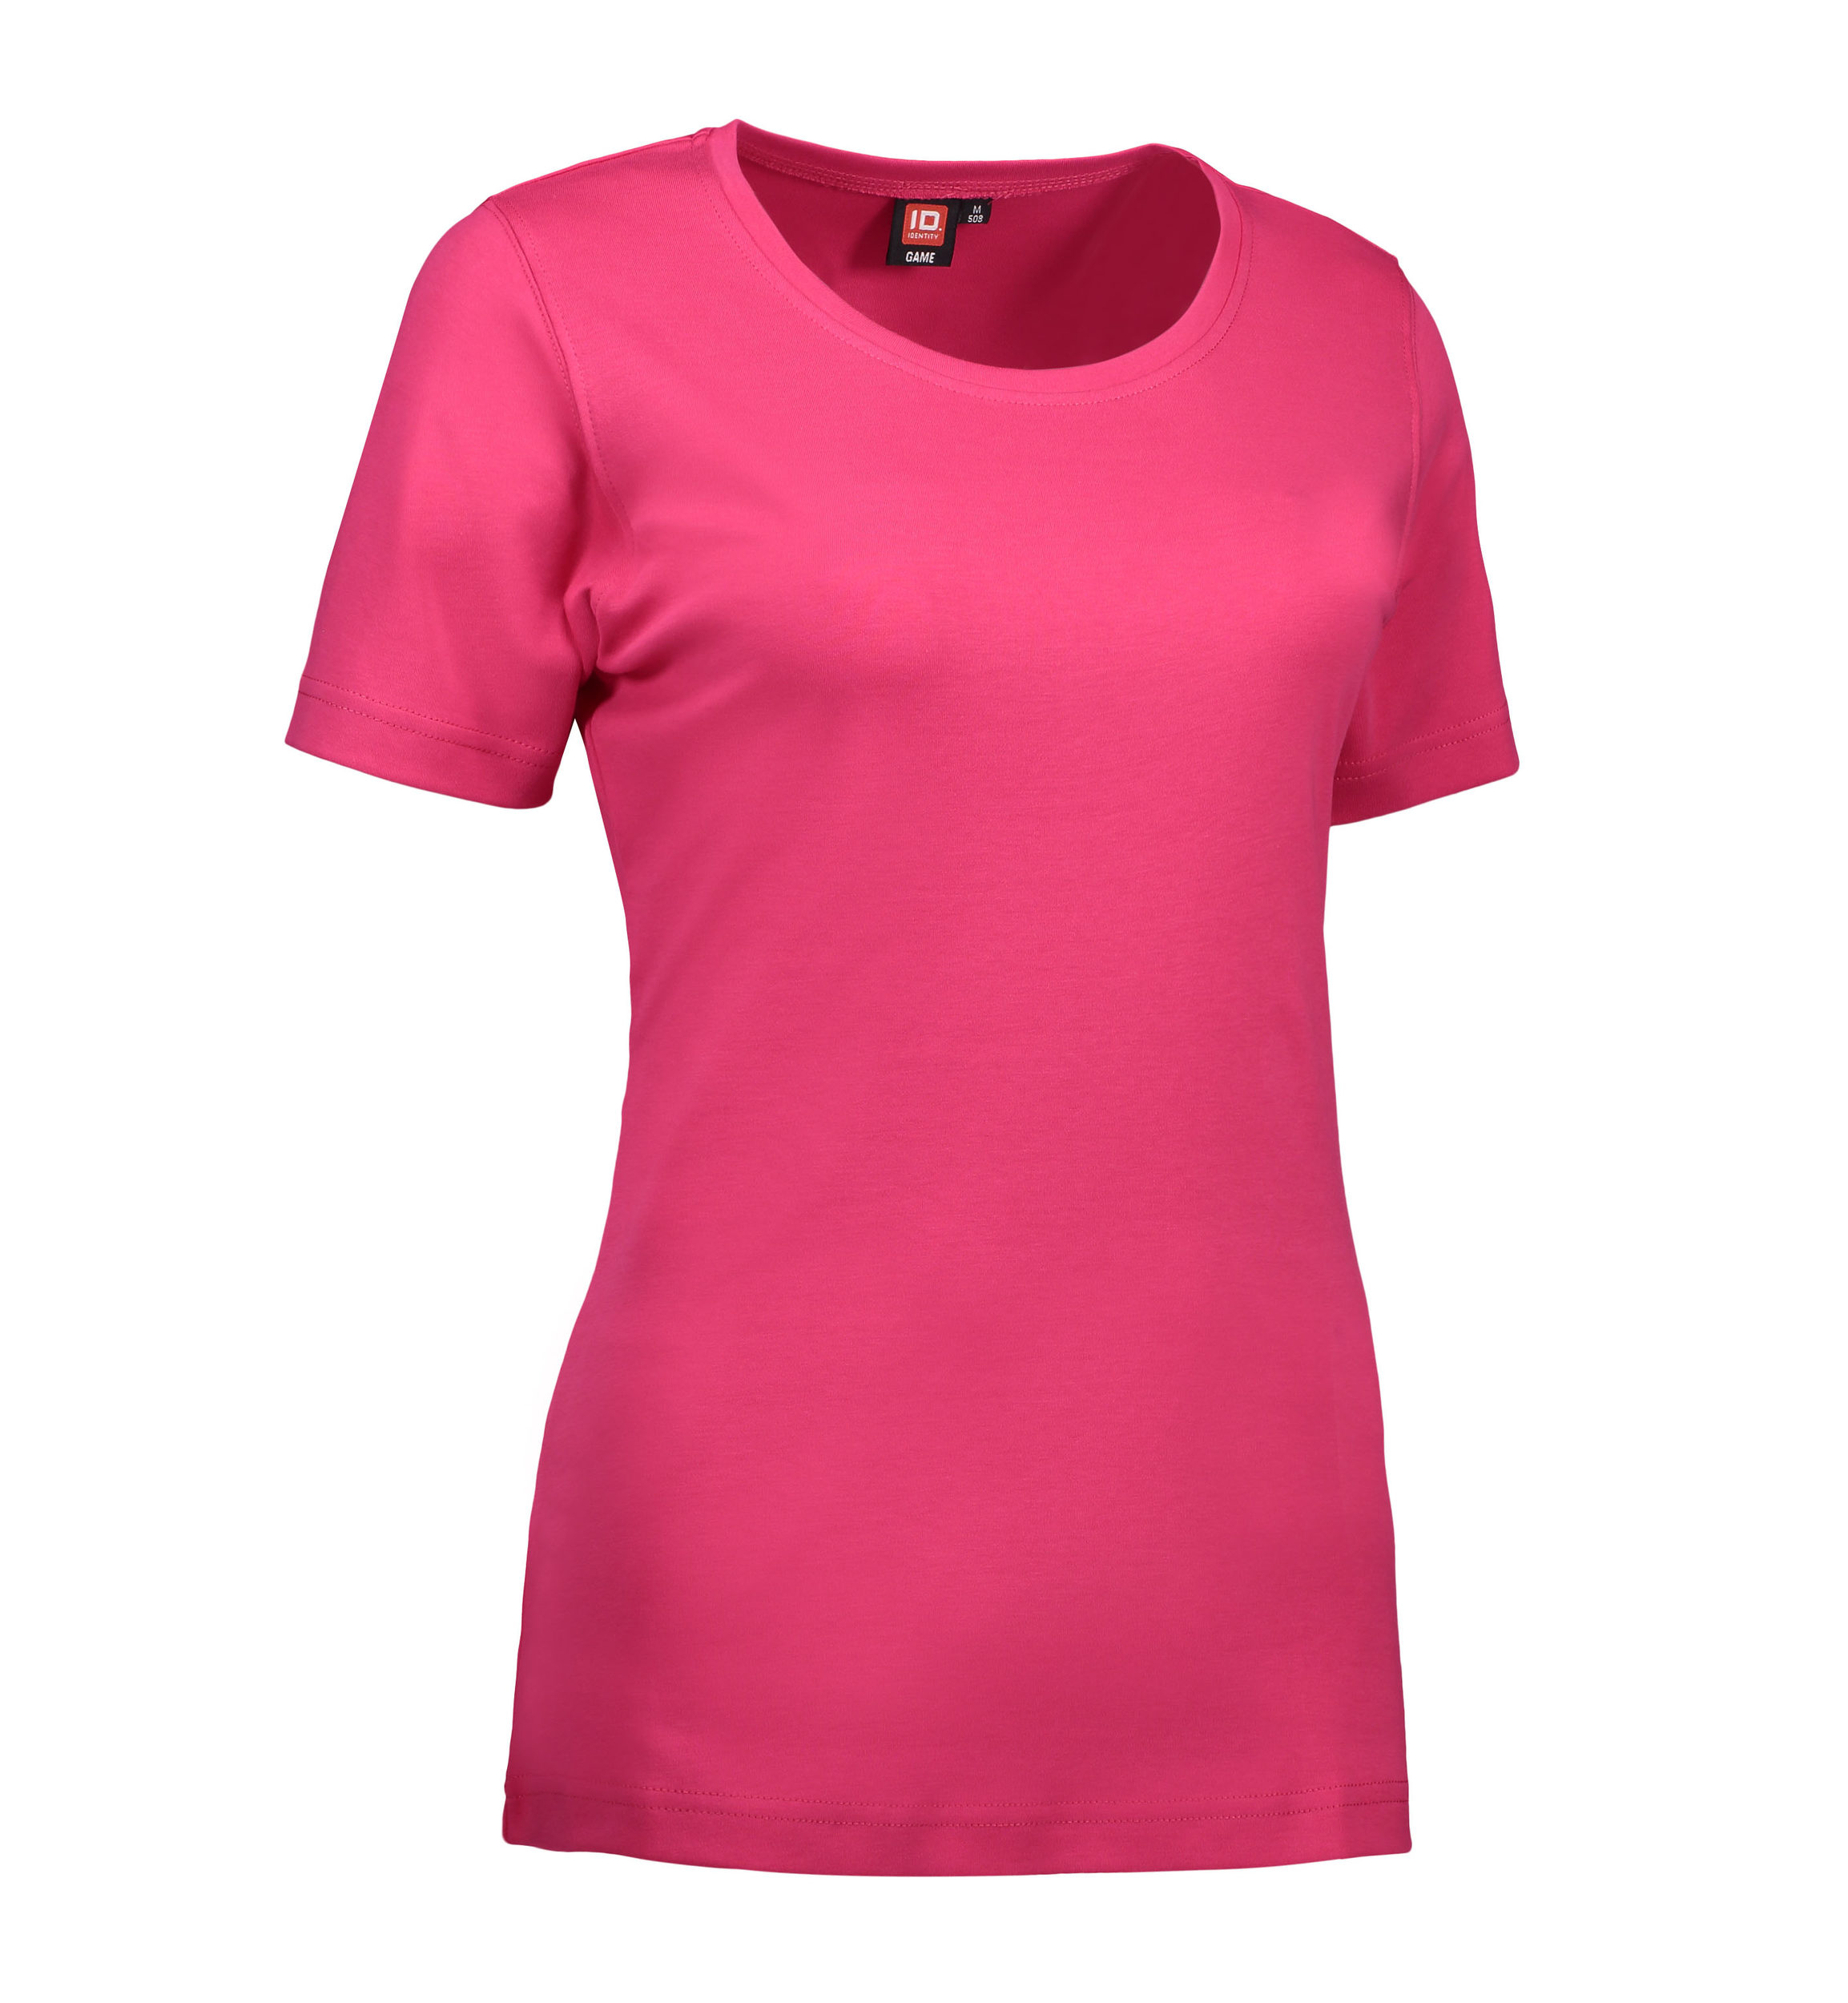 Billede af Dame t-shirt med rund hals i pink - XL hos Sygeplejebutikken.dk